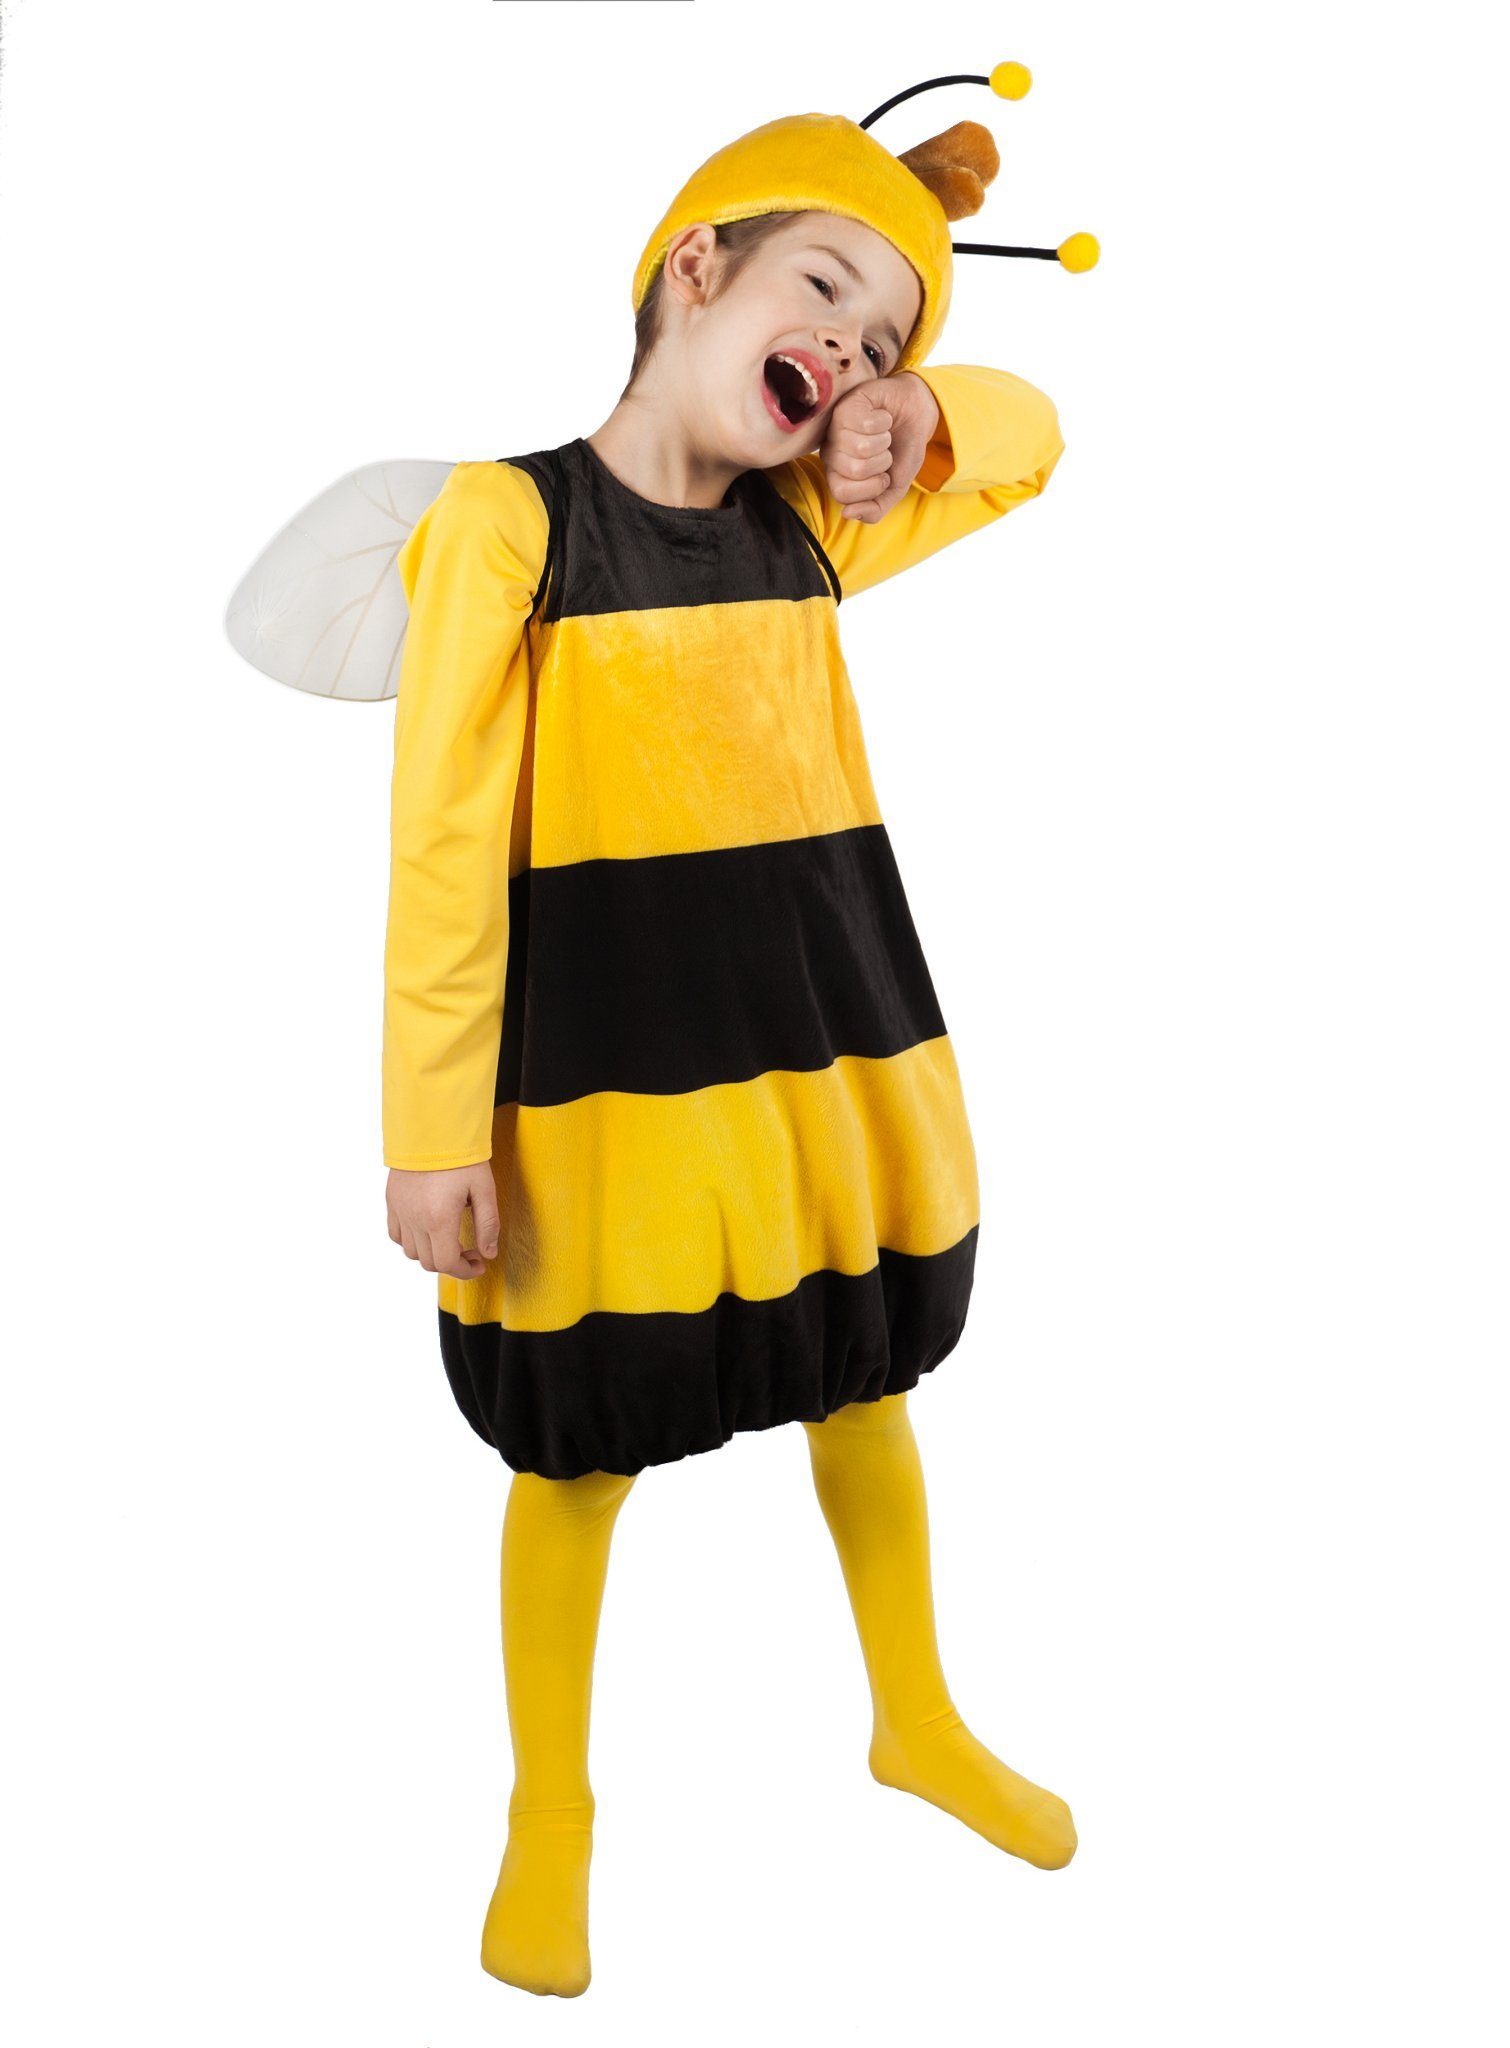 Maskworld Kostüm Willi Kinderkostüm, Hochwertiges Lizenzkostüm aus der animierten TV-Serie 'Biene Maja'